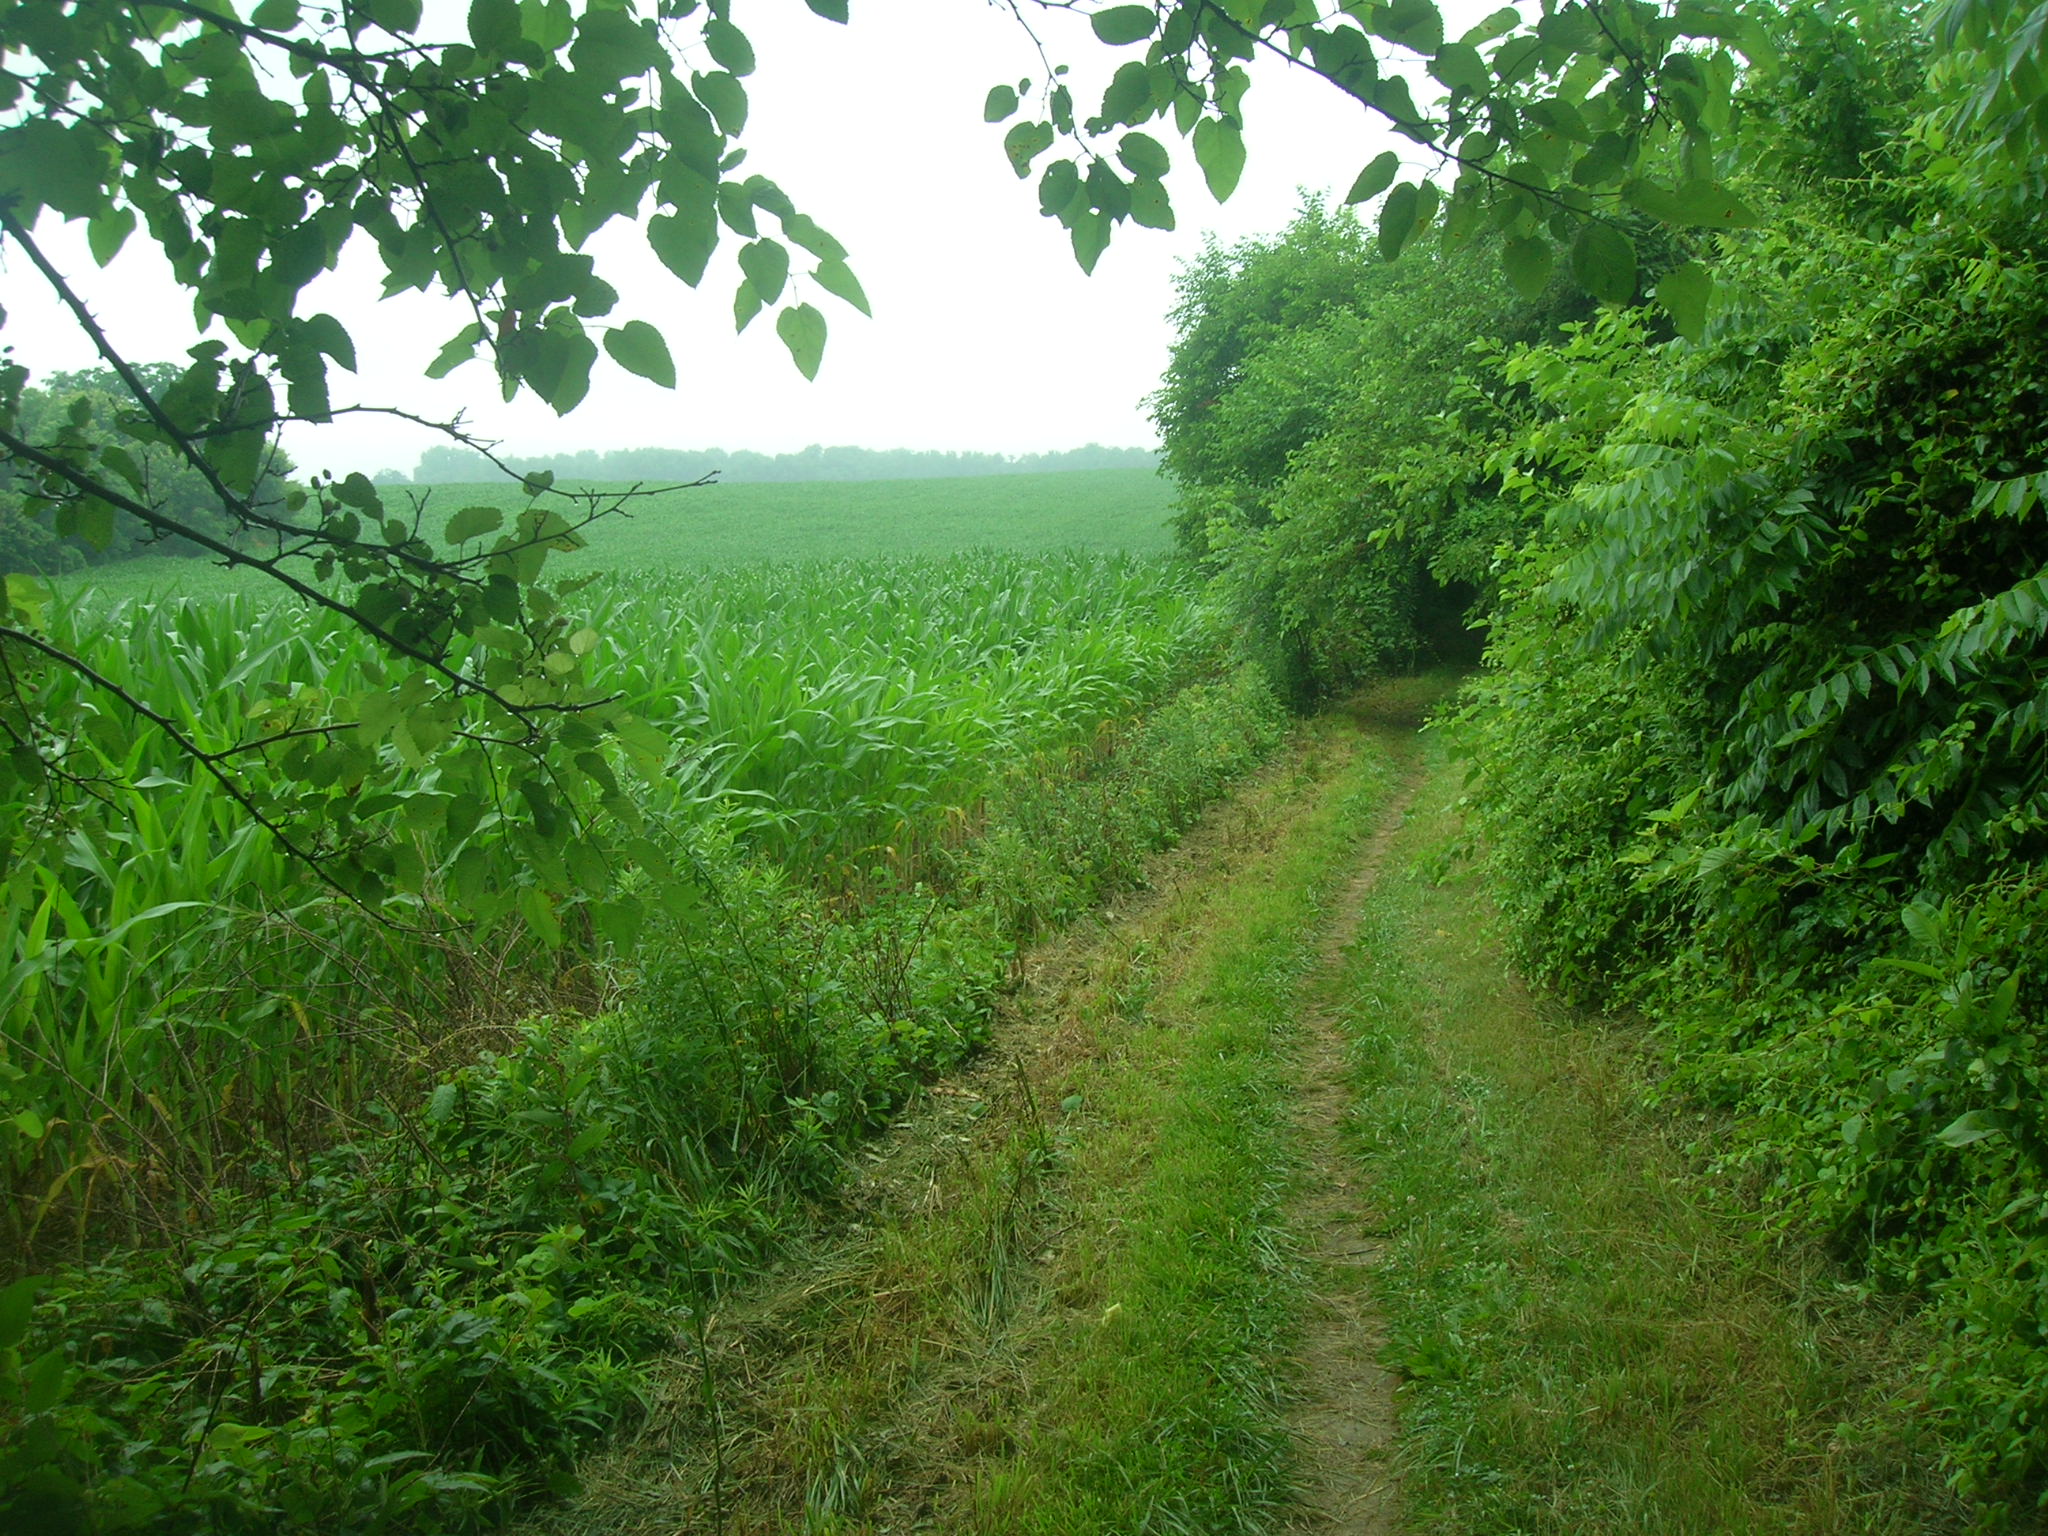 Trail along field